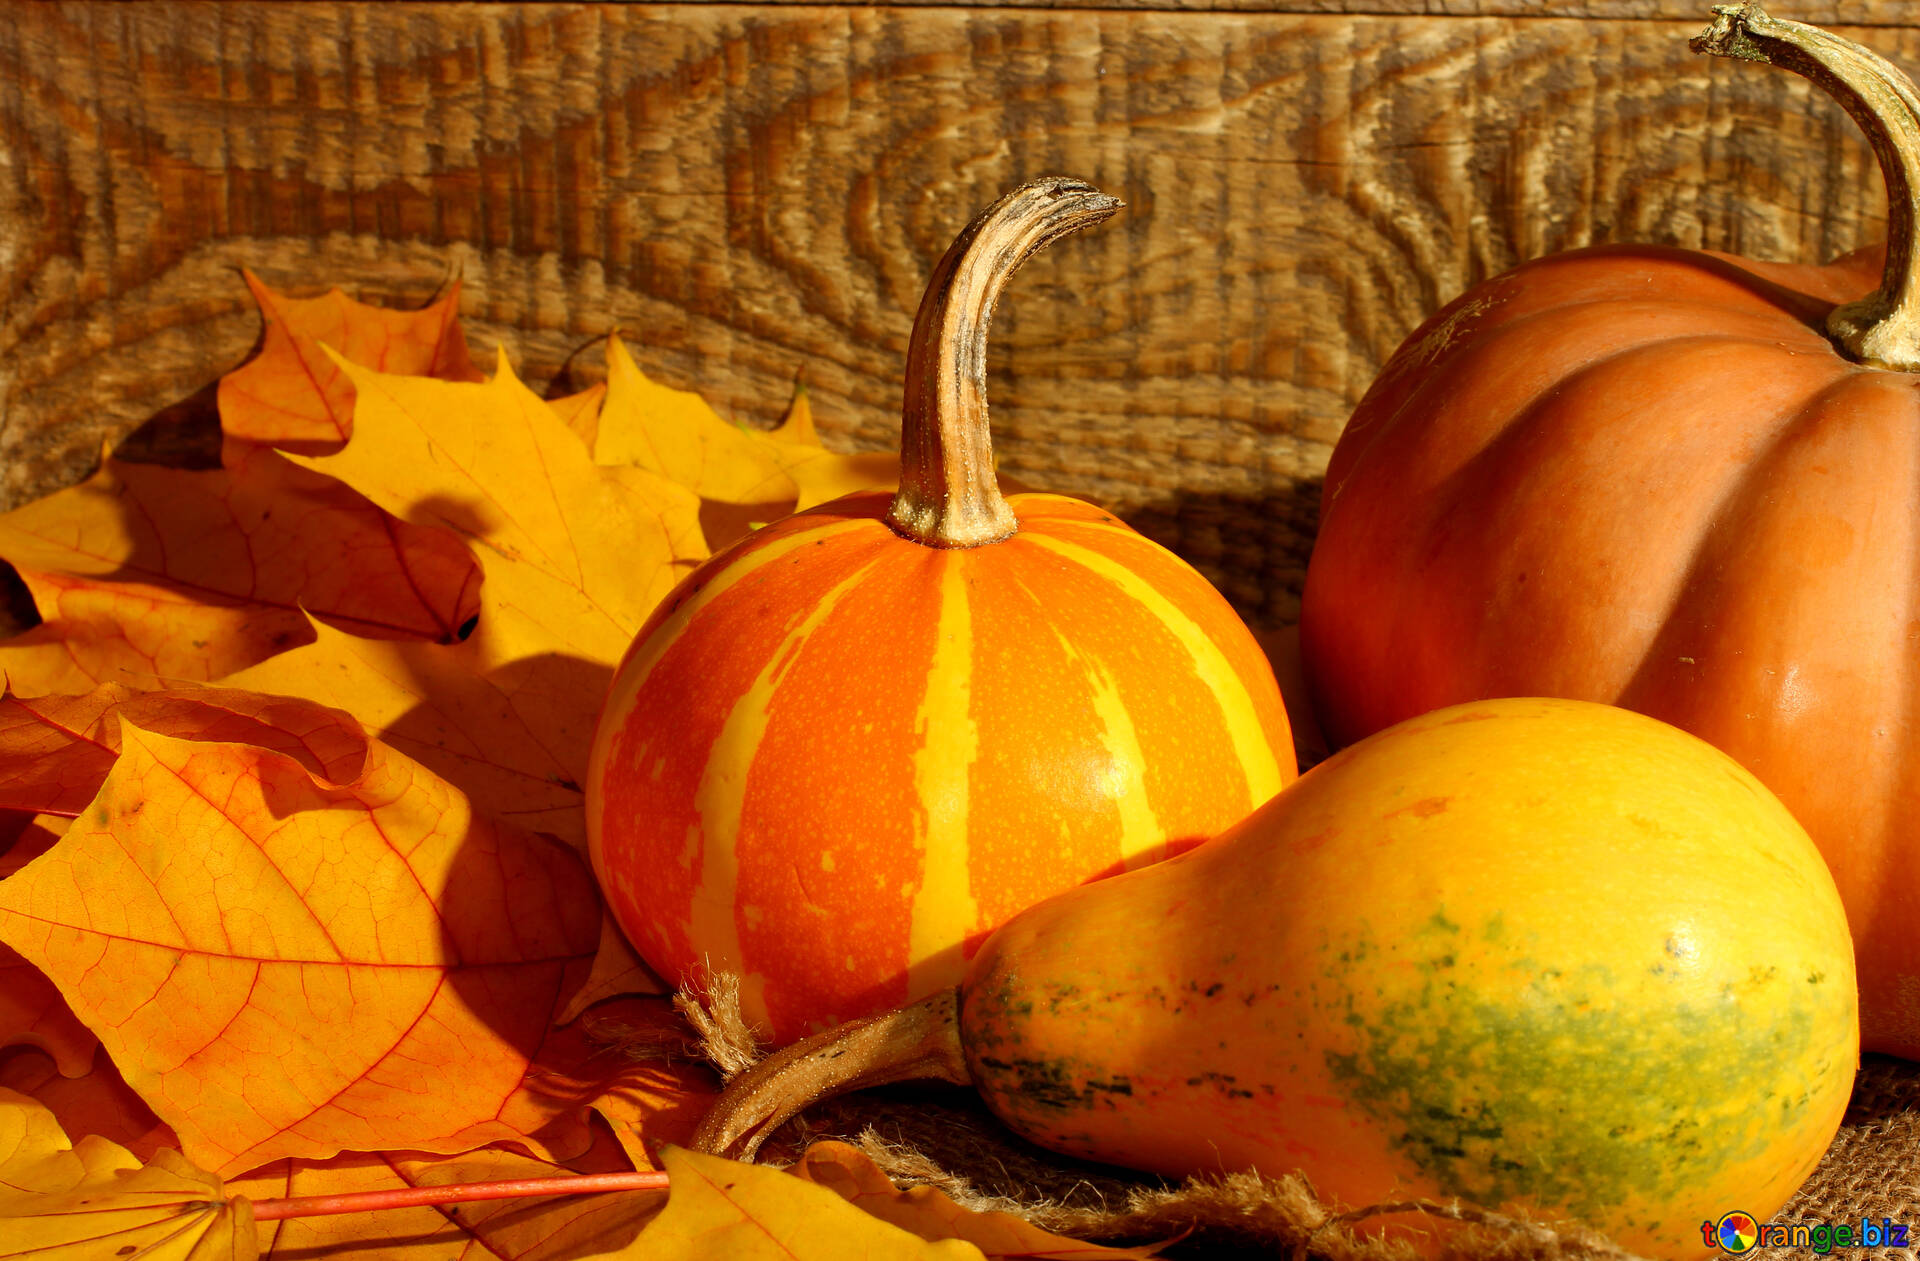 Calabazas y hojas de otoño imagen fondos de pantalla para escritorio  calabazas y hojas de otoño imagens hojas № 35421 